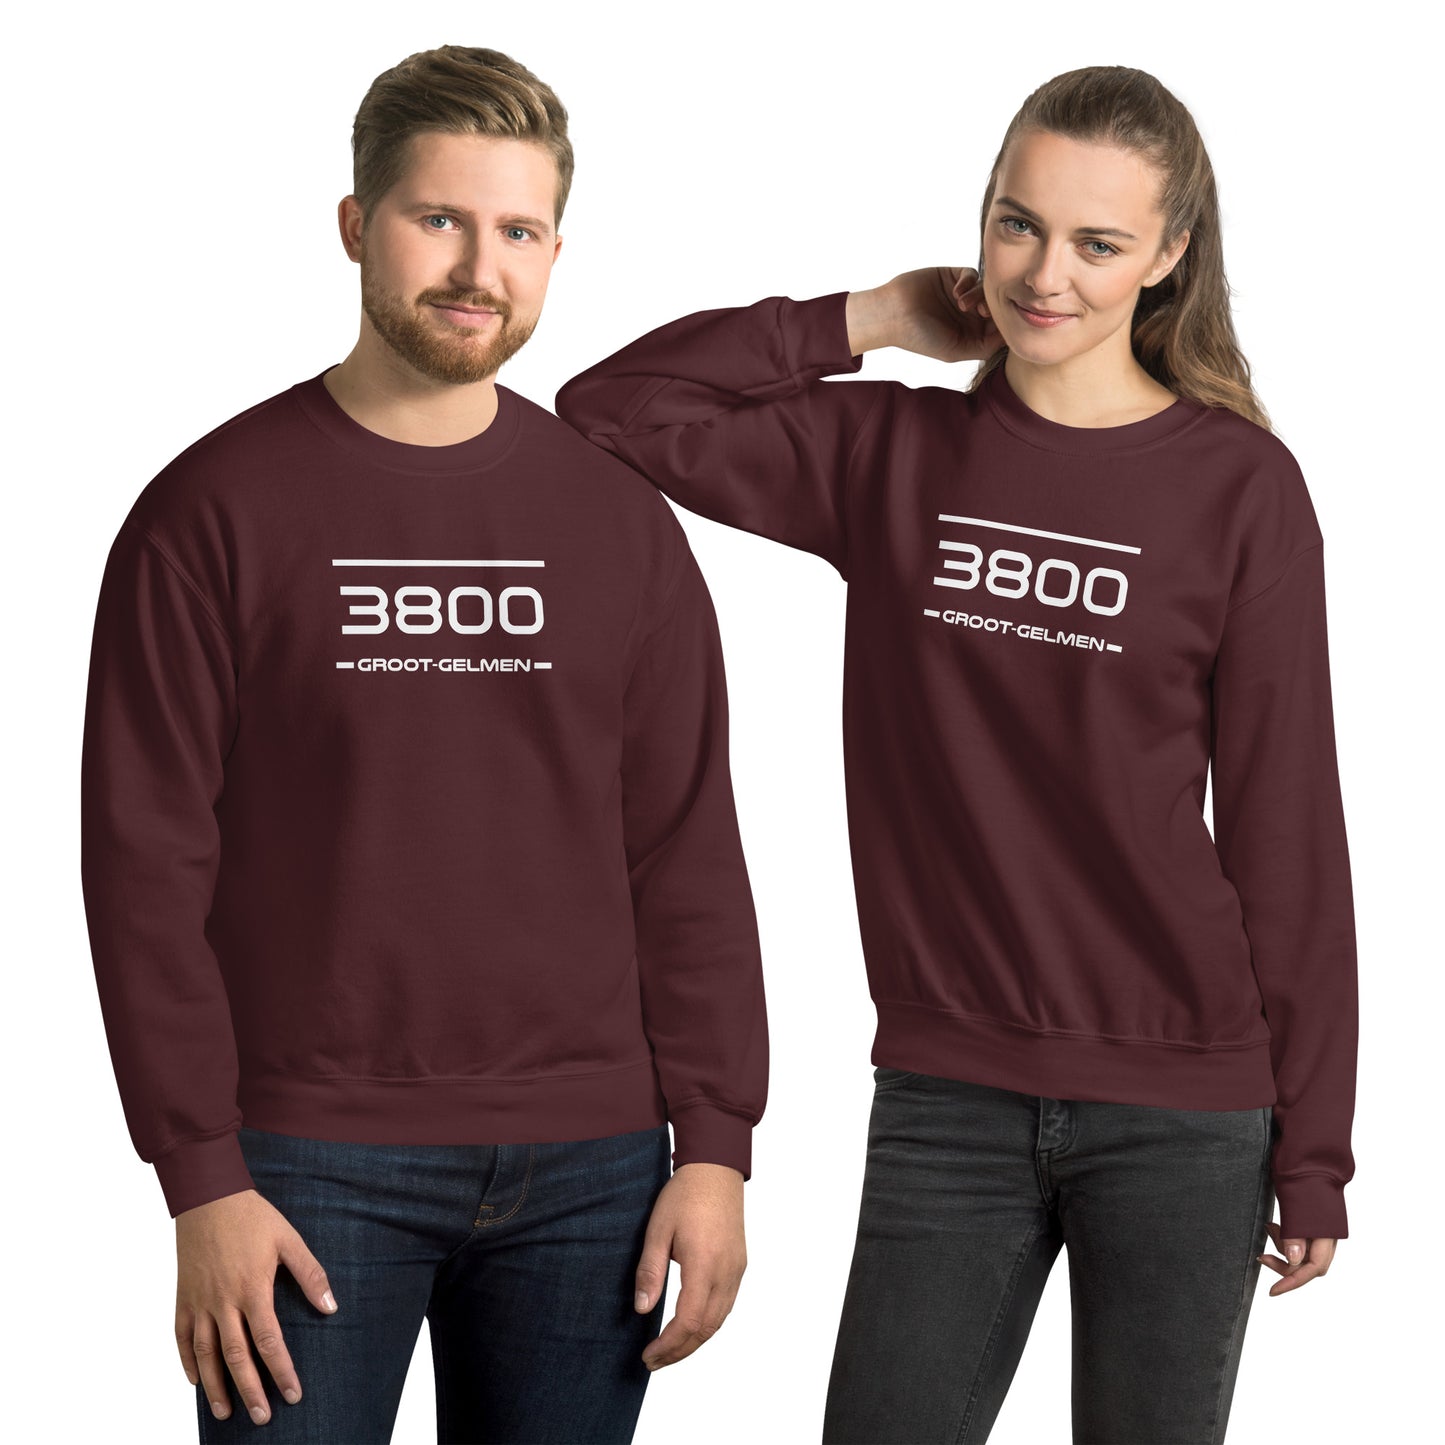 Sweater - 3800 - Groot-Gelmen (M/V)